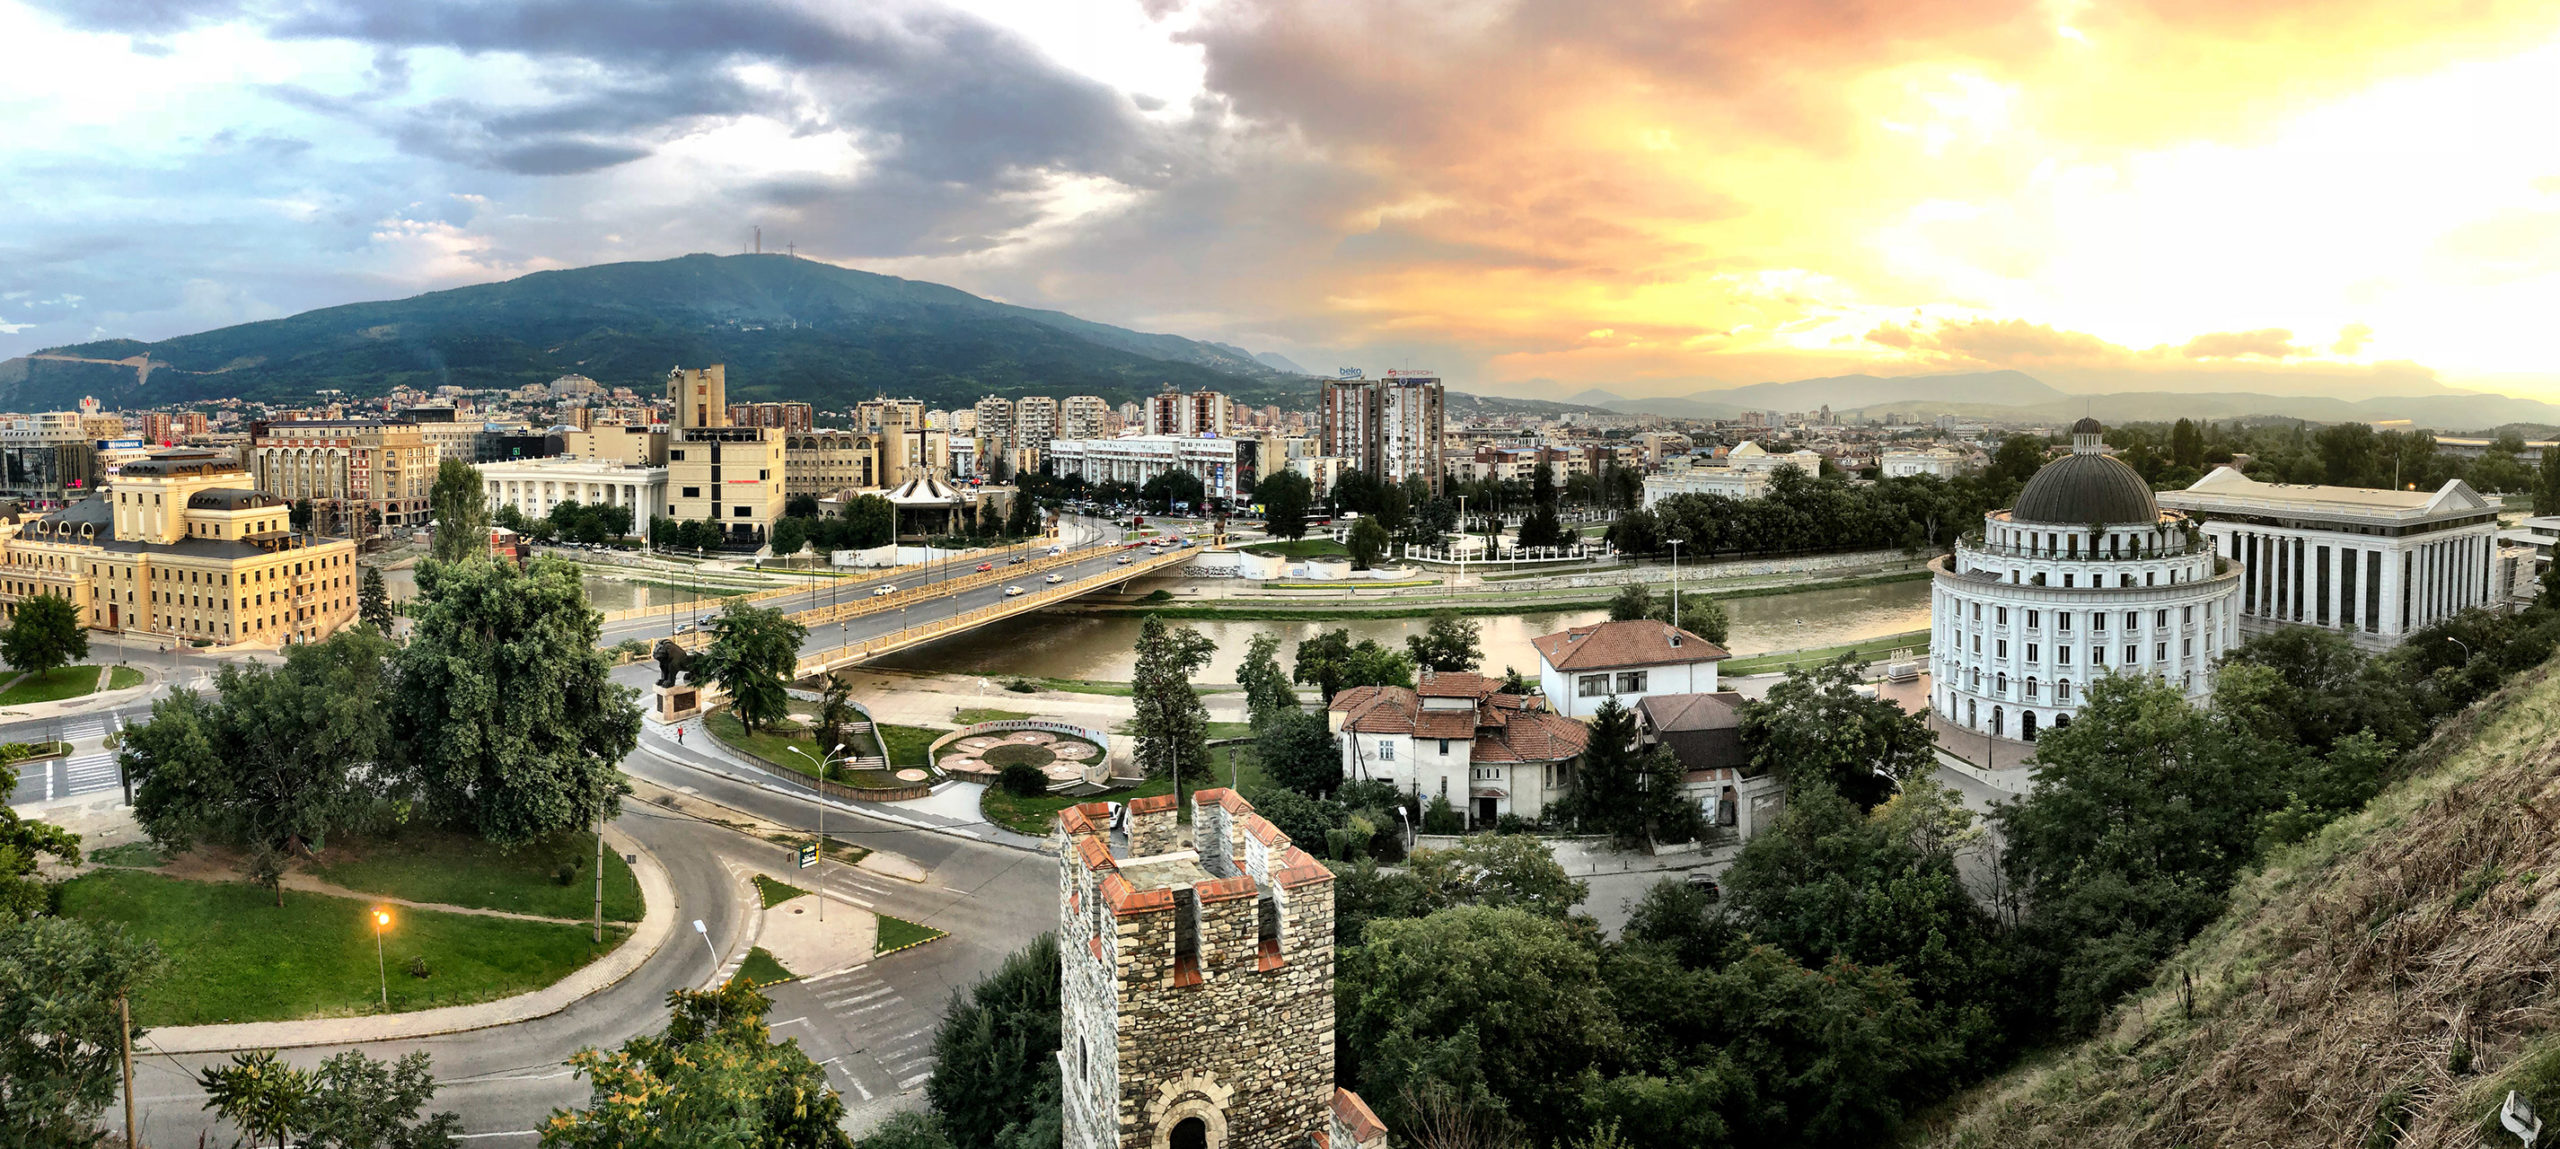 Βόρεια Μακεδονία: Ξεκίνησε η έκδοση νέων ταυτοτήτων με τη νέα συνταγματική ονομασία της χώρας